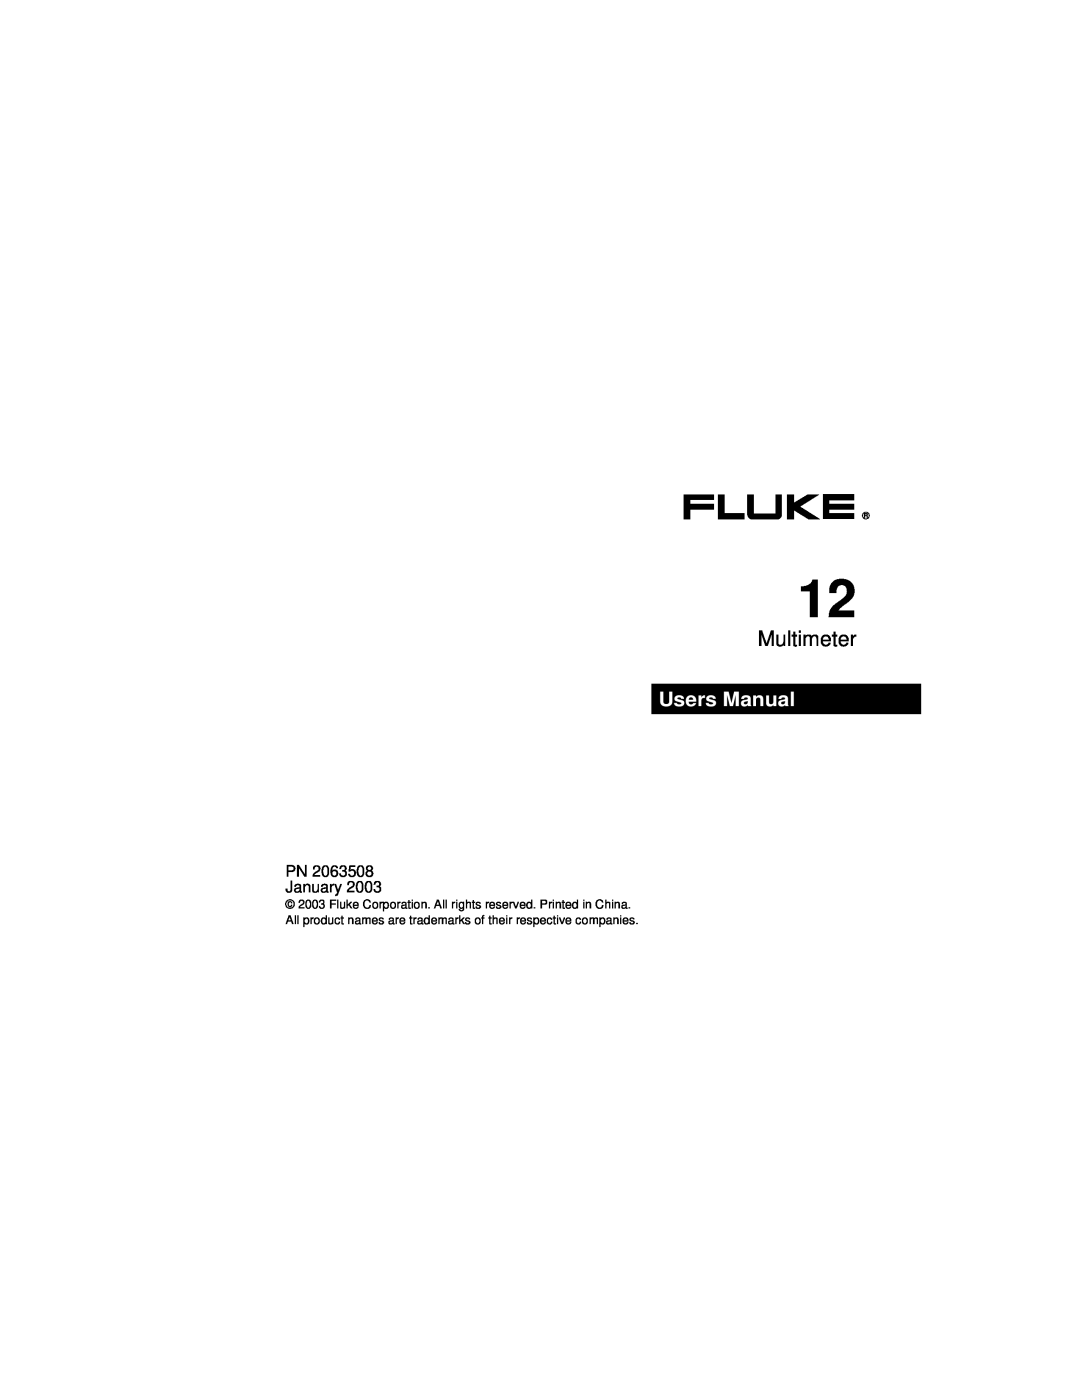 Fluke PN 2063508 user manual Multimeter 